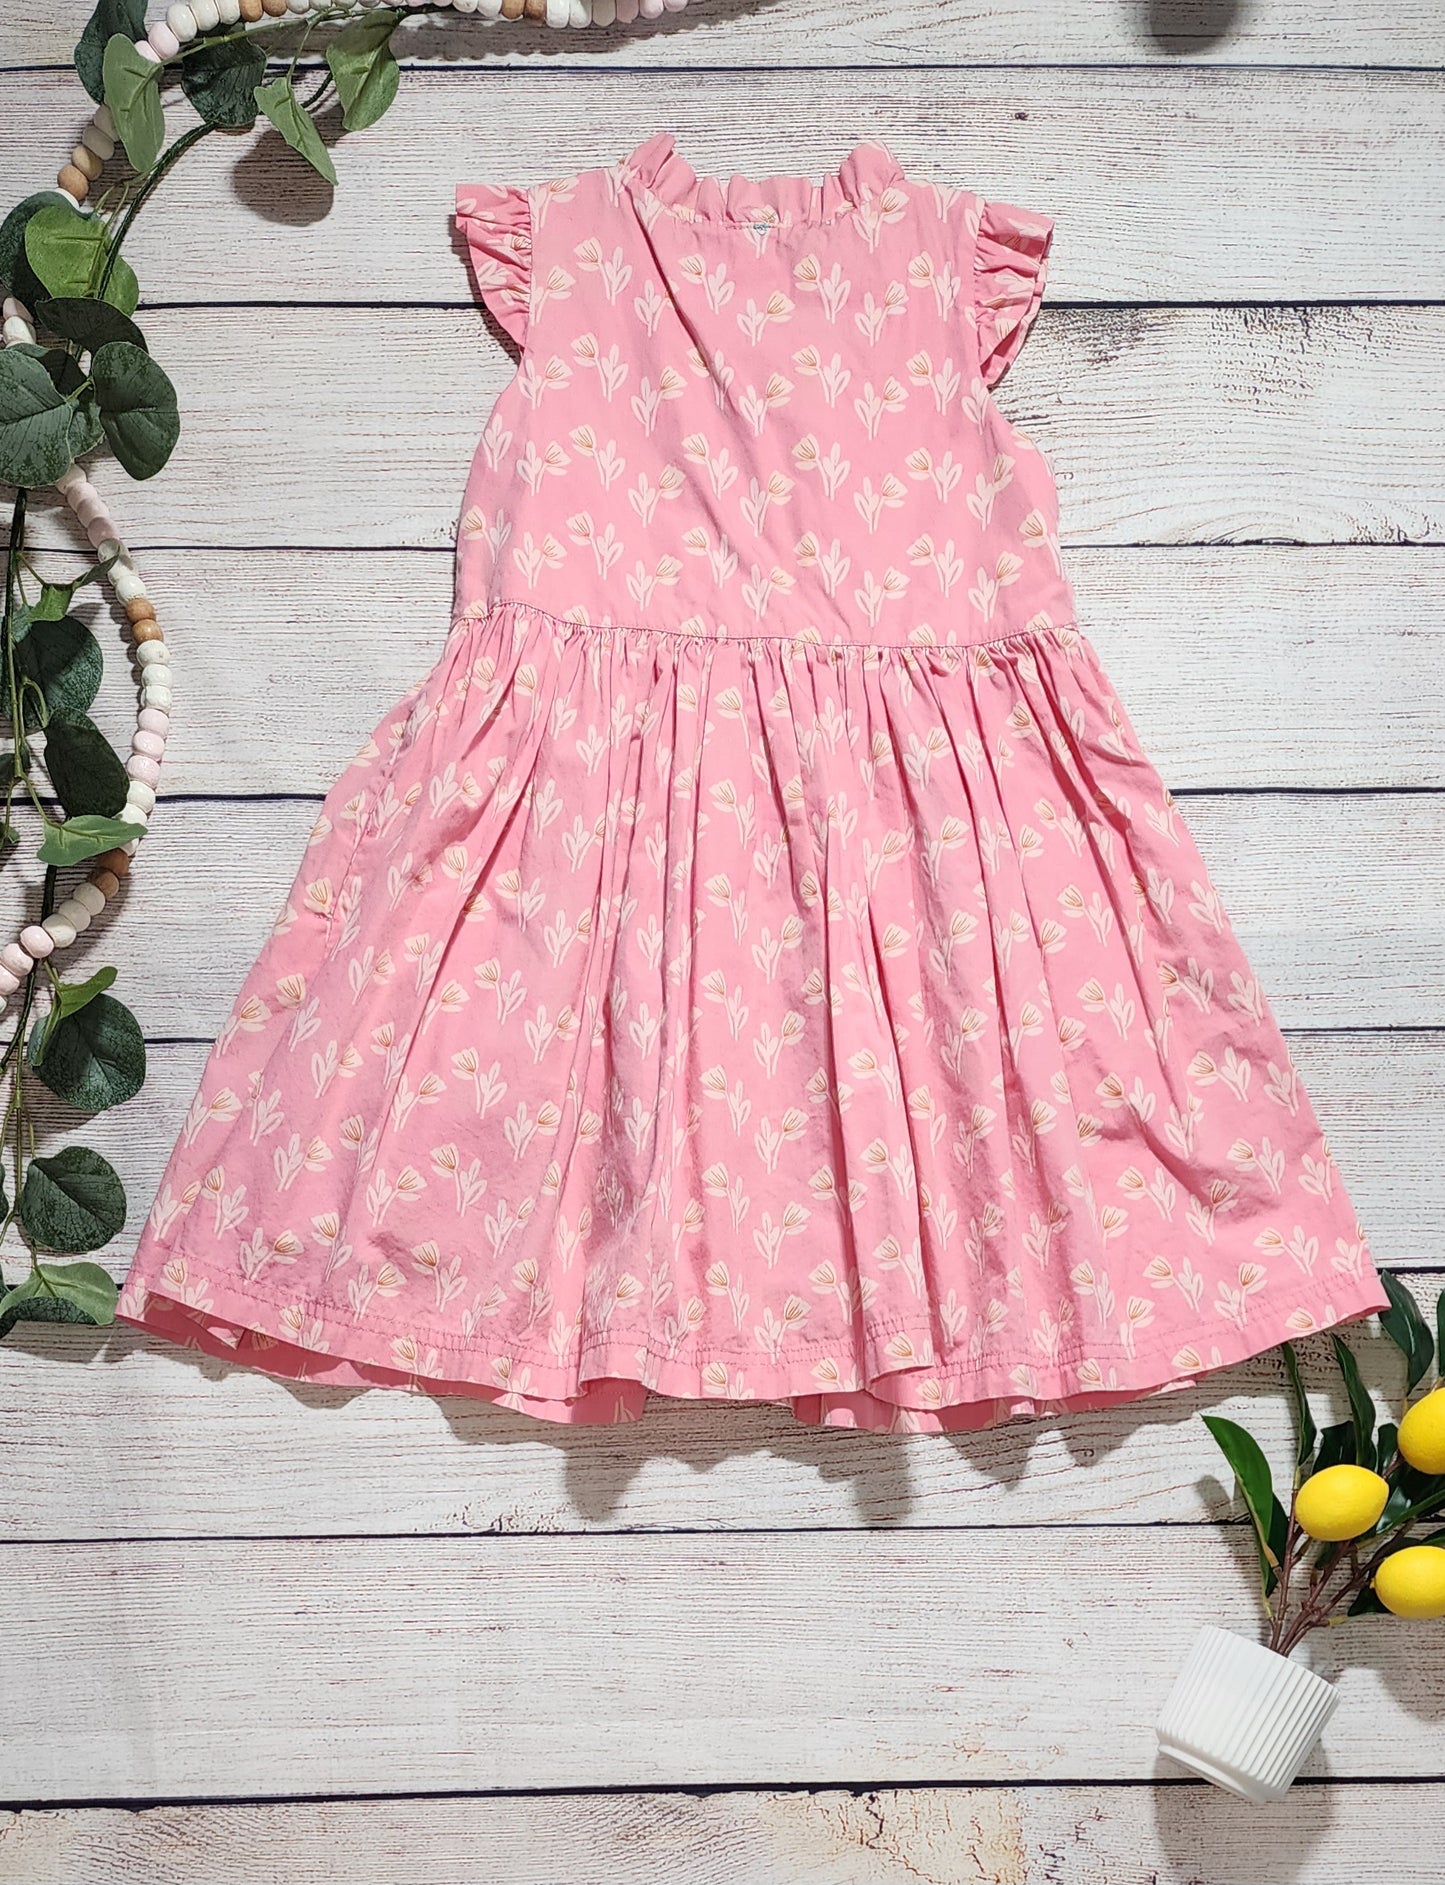 Little Miss Marmalade Dress, Size 7